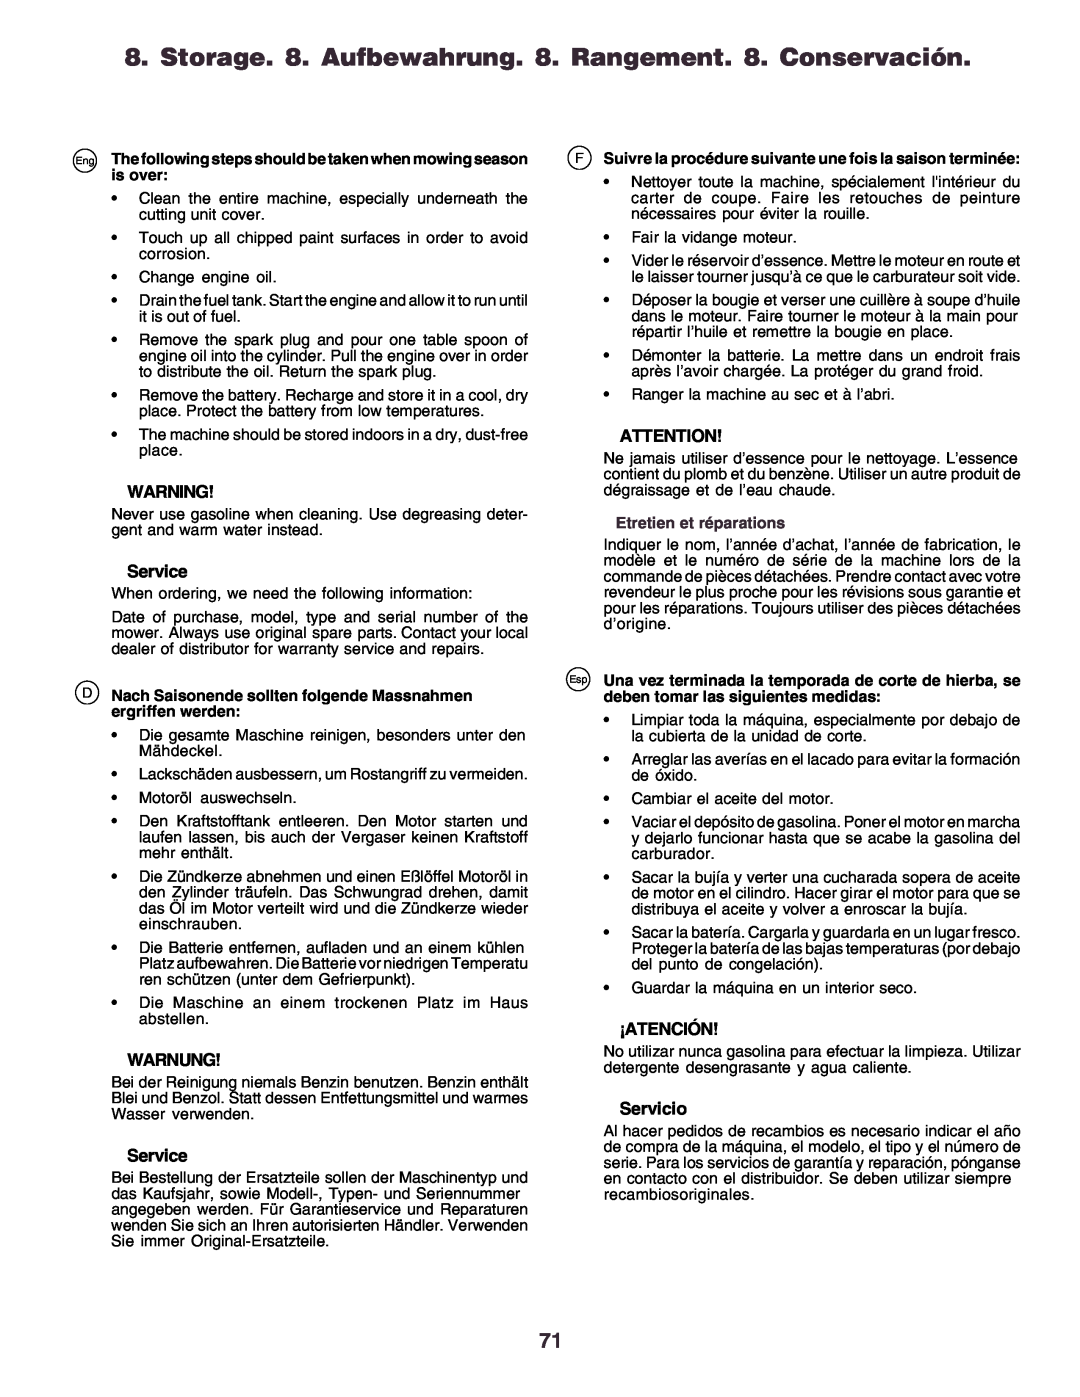 Husqvarna YTH170 instruction manual Service, Warnung, ¡Atención, Servicio, Etretien et réparations 